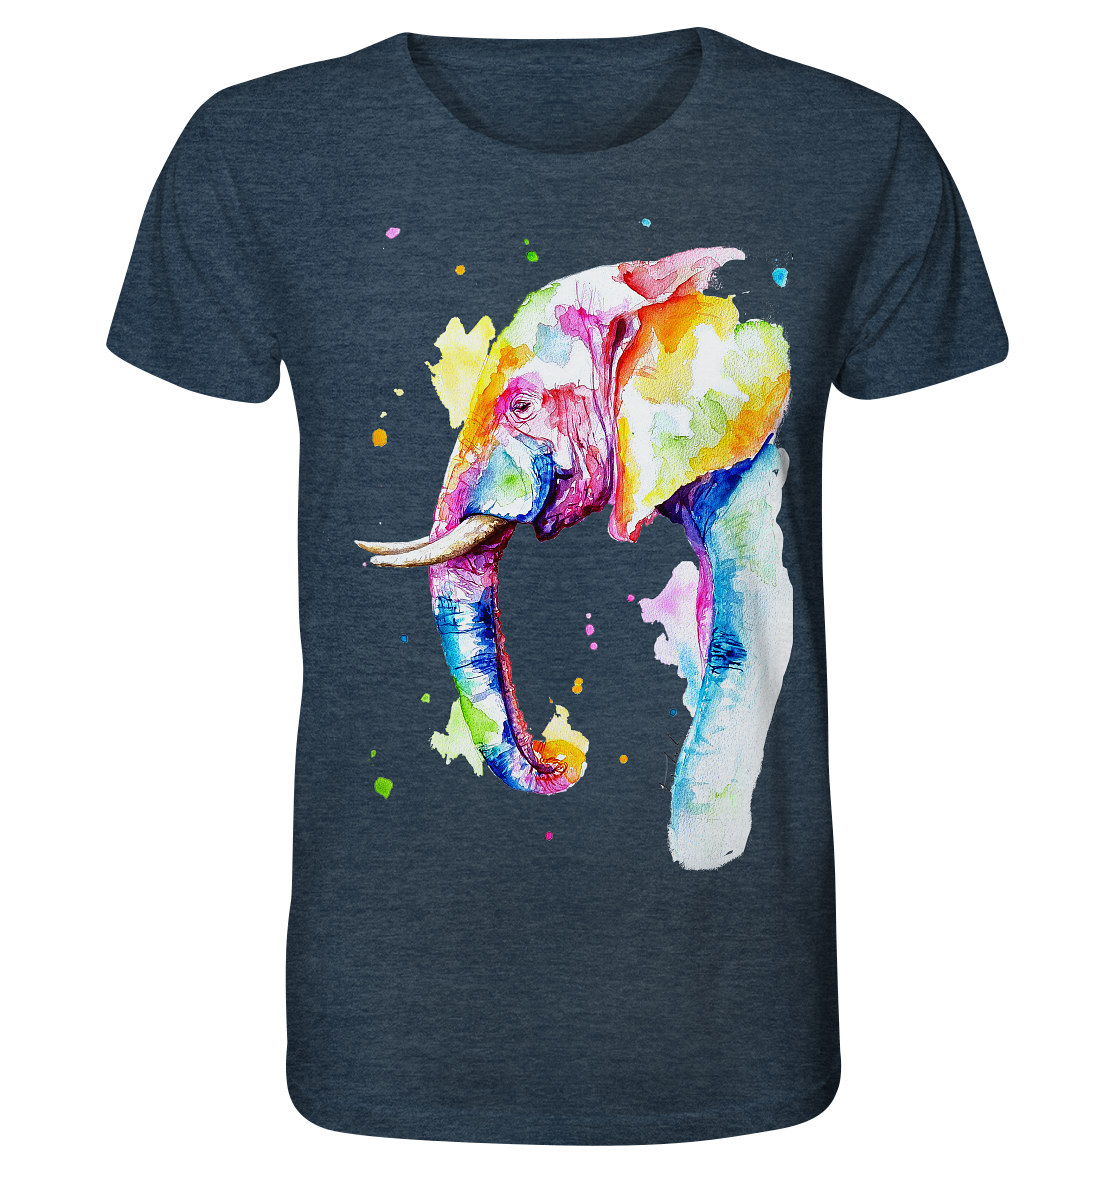 Bunter Elefant - Organic Shirt (meliert)